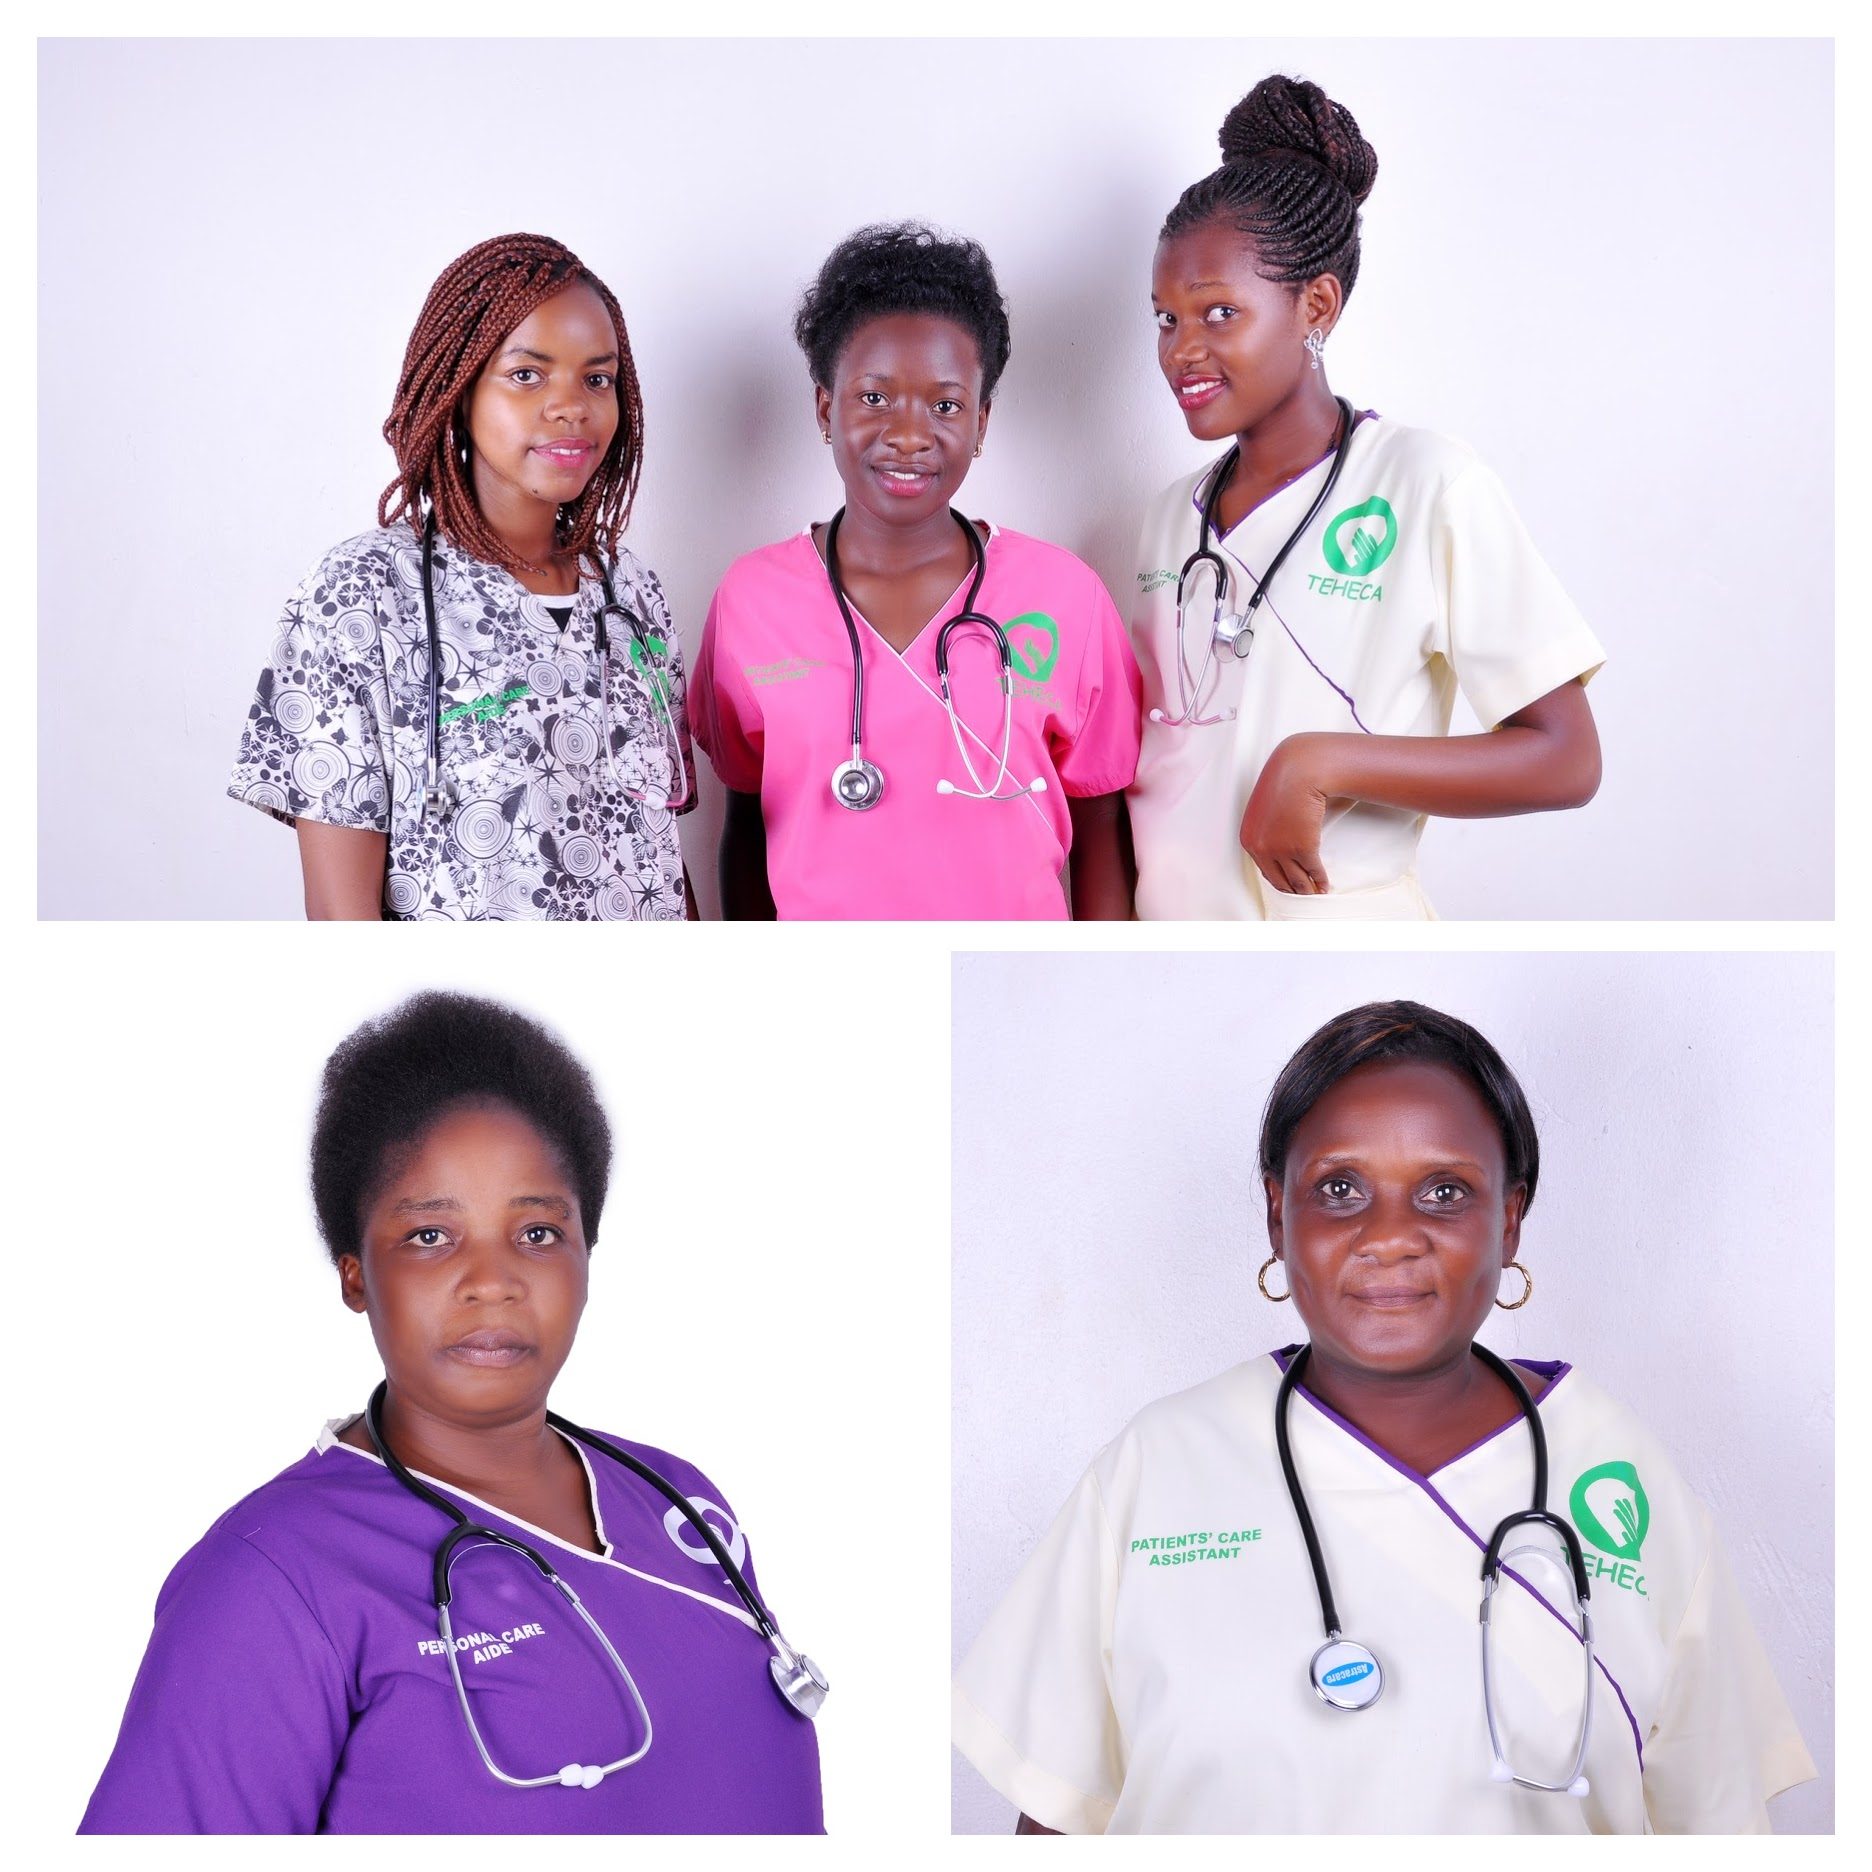 Patient Care team at Teheca